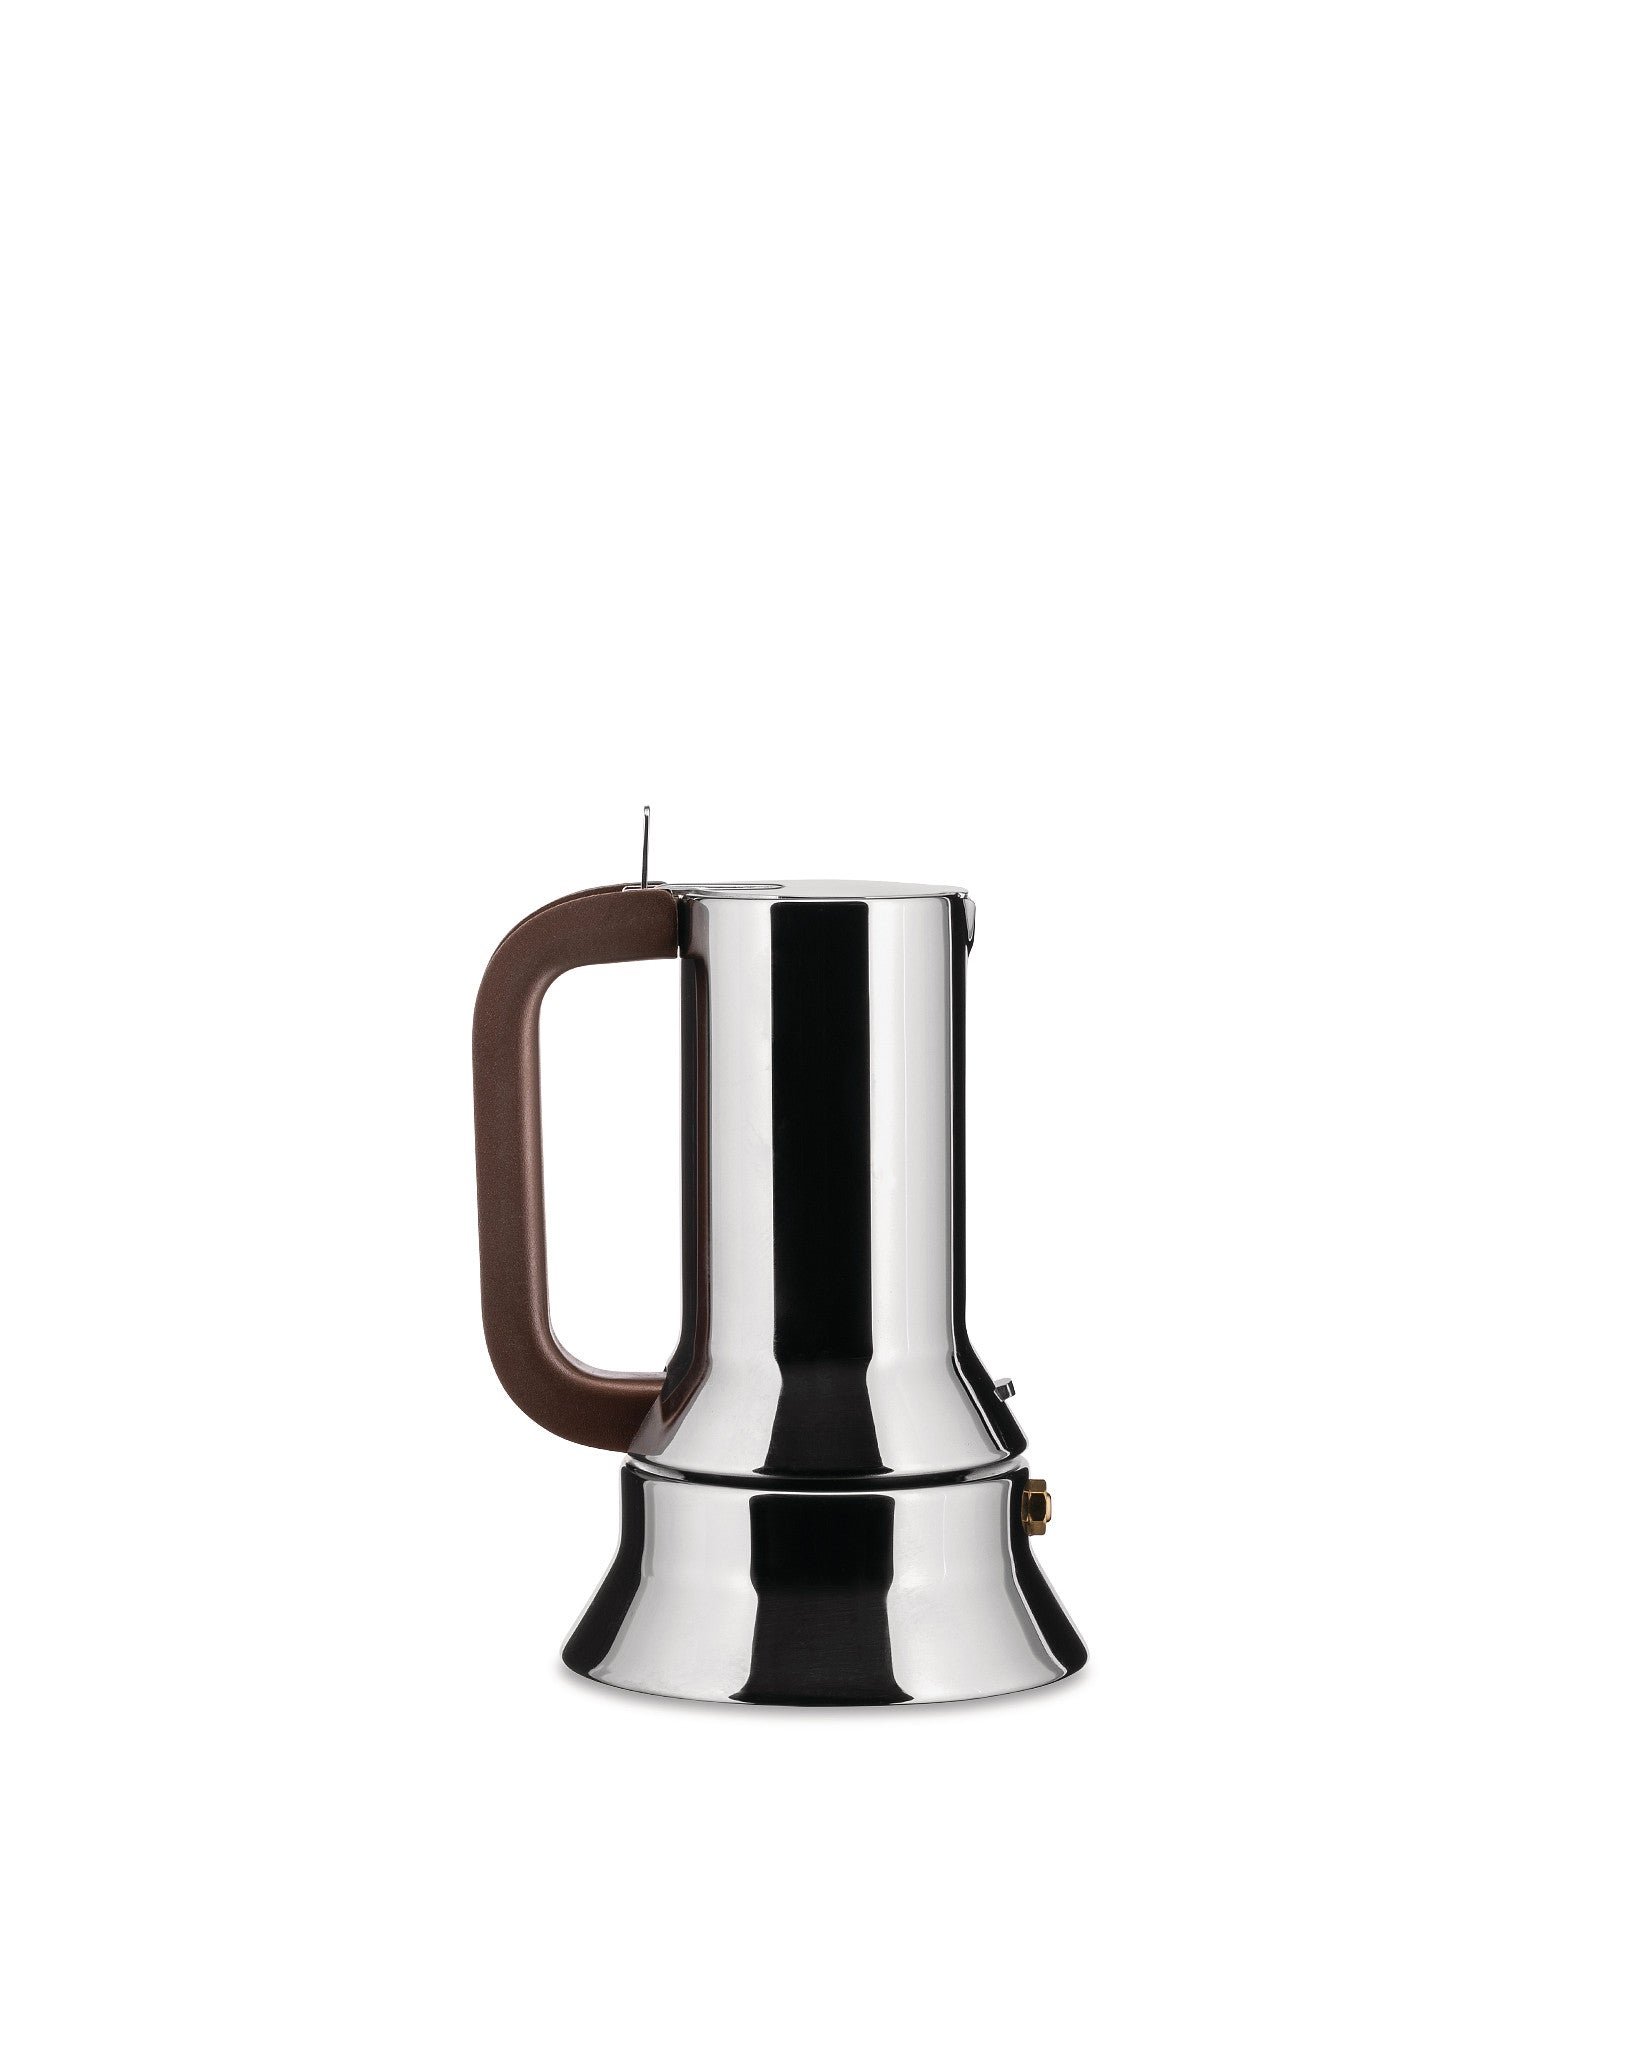 Alessi 9090 Espresso Coffee Maker | Alessi Spa (US) – Alessi USA Inc